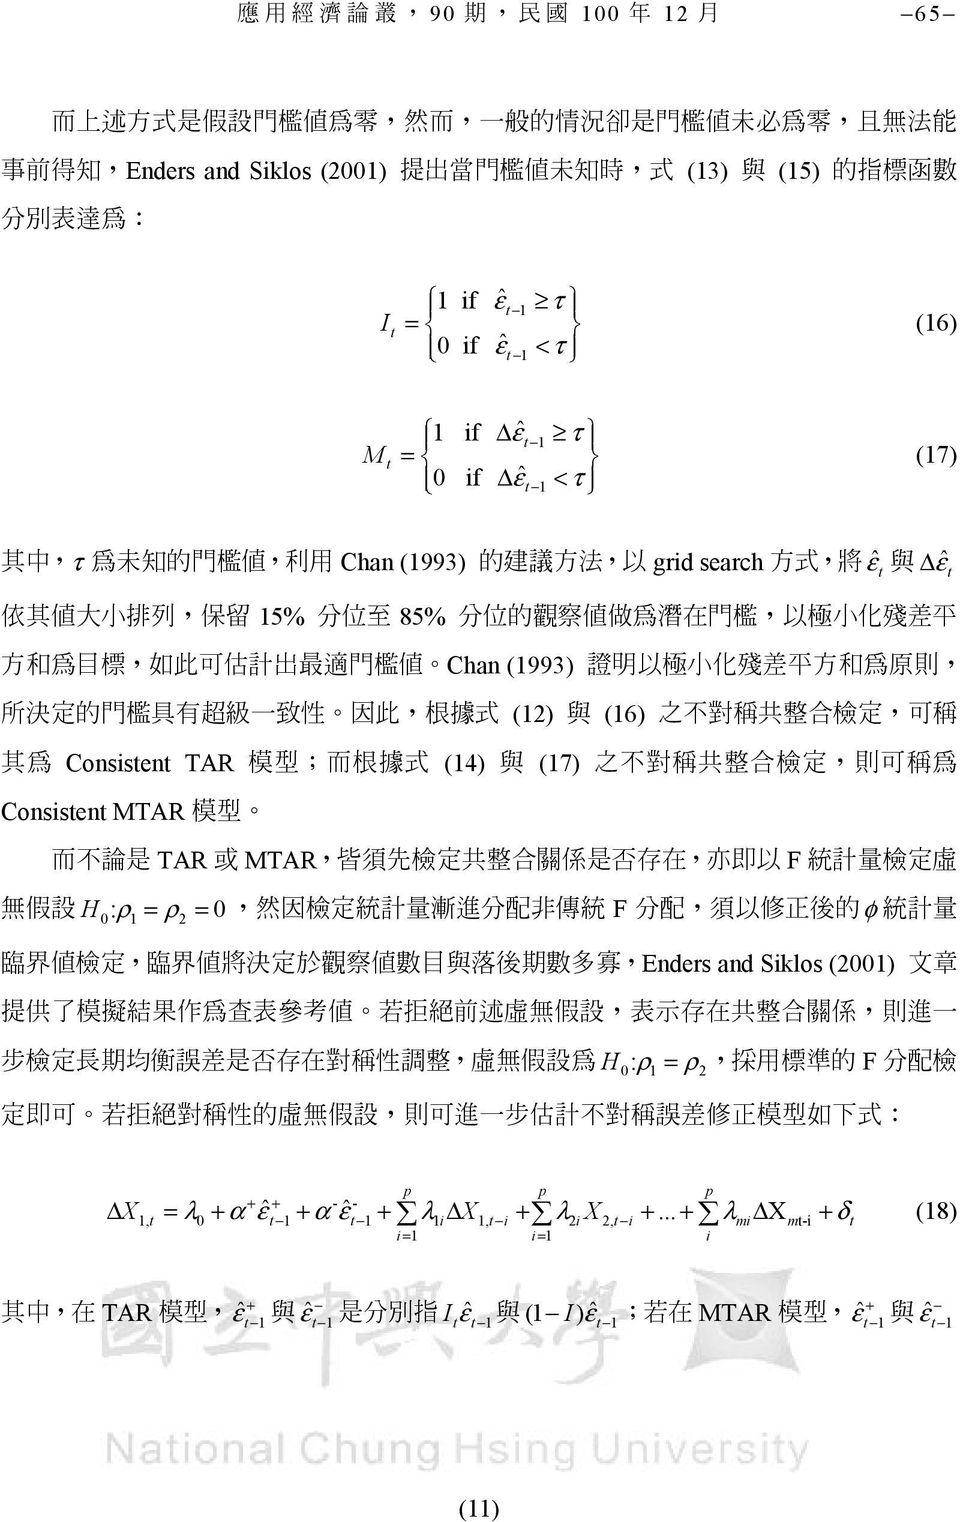 殘 差 平 方 和 為 目 標, 如 此 可 估 計 出 最 適 門 檻 值 Chan (993) 證 明 以 極 小 化 殘 差 平 方 和 為 原 則, 所 決 定 的 門 檻 具 有 超 級 一 致 性 因 此, 根 據 式 (2) 與 (6) 之 不 對 稱 共 整 合 檢 定, 可 稱 其 為 Consistent TAR 模 型 ; 而 根 據 式 (4) 與 (7) 之 不 對 稱